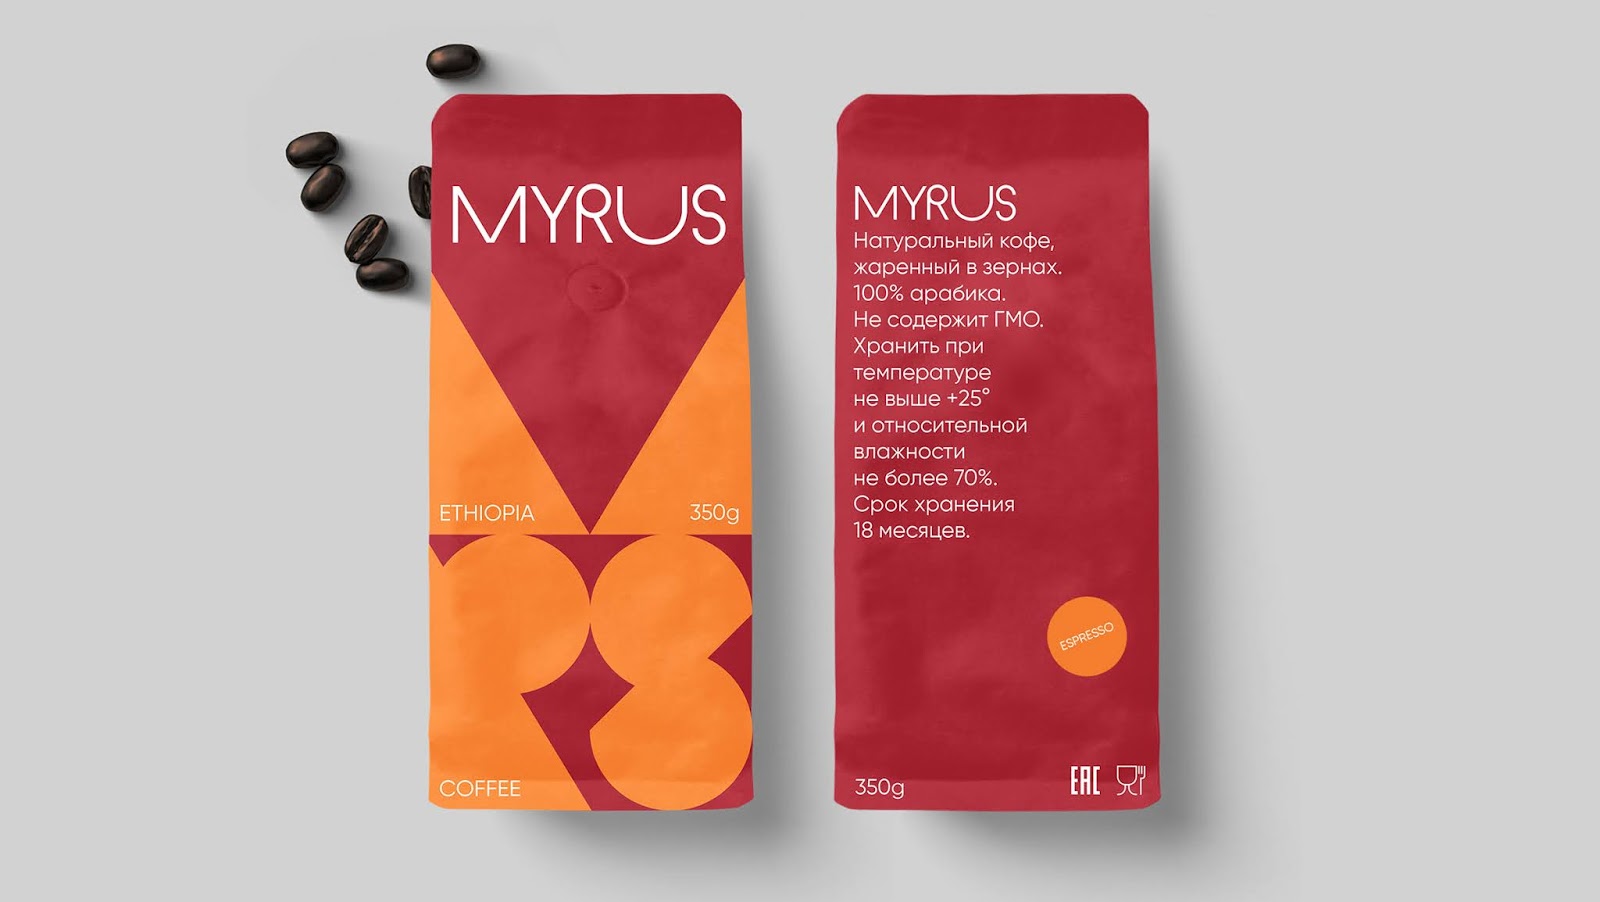 MYRUS咖啡概念包装设计